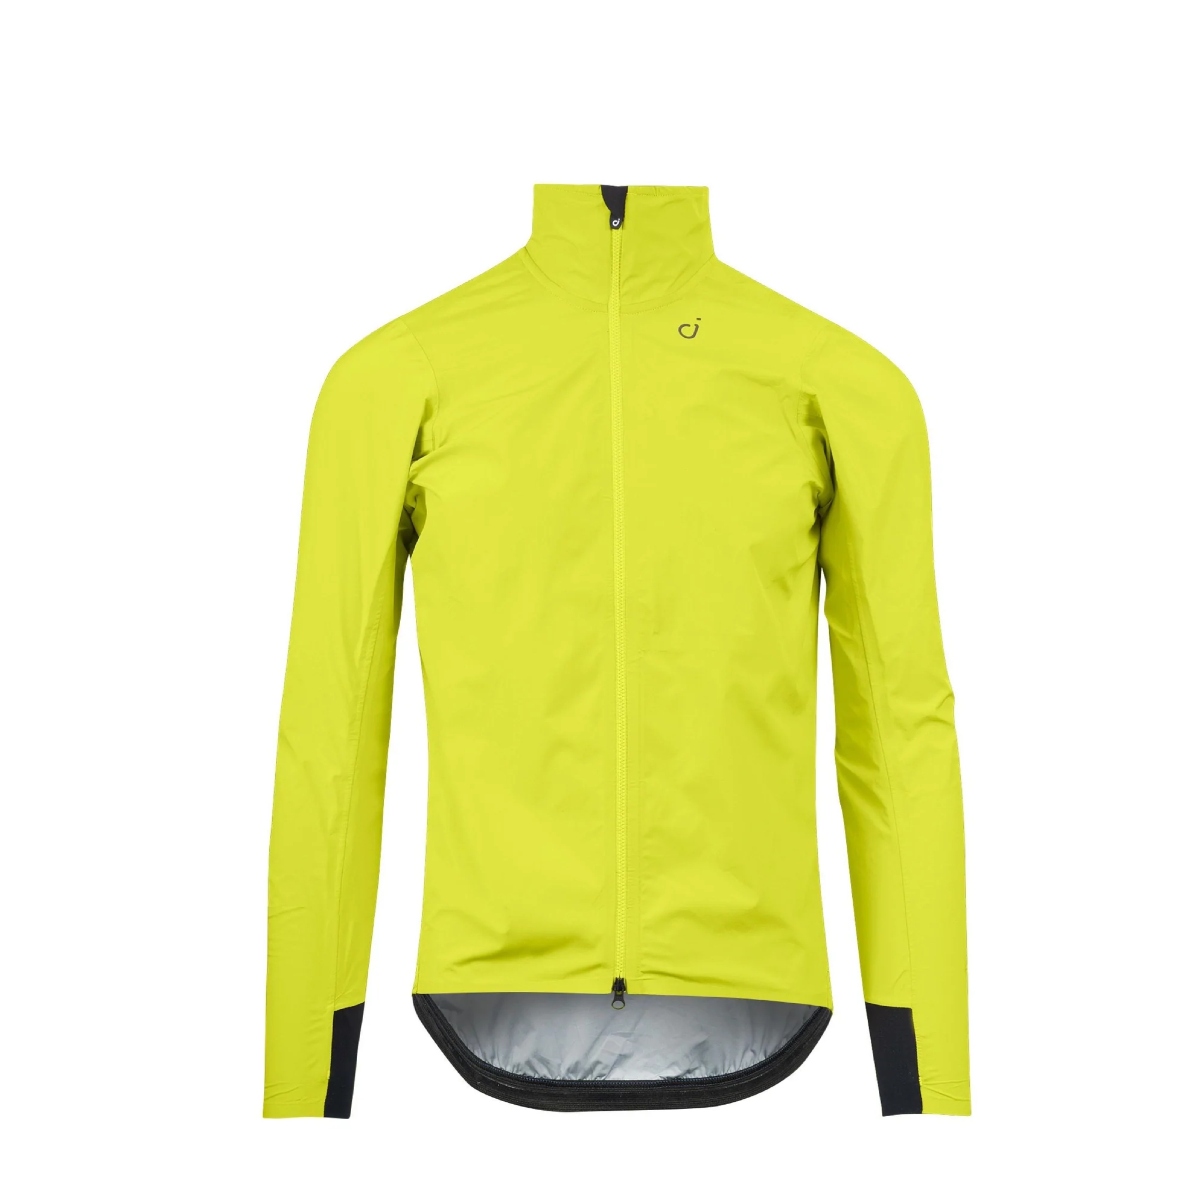 Velocio Ultralight rain jacket